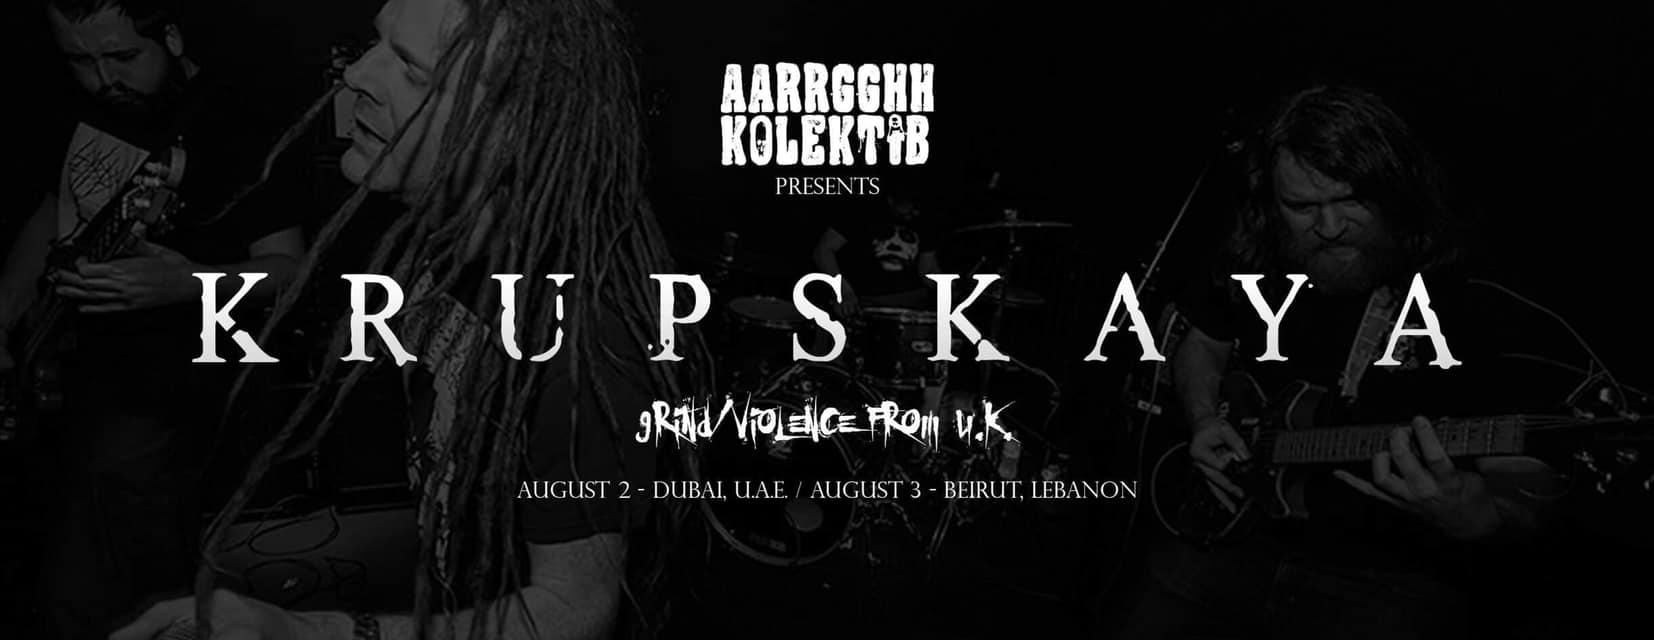 Krupskaya Live Concert - Coming Soon in UAE